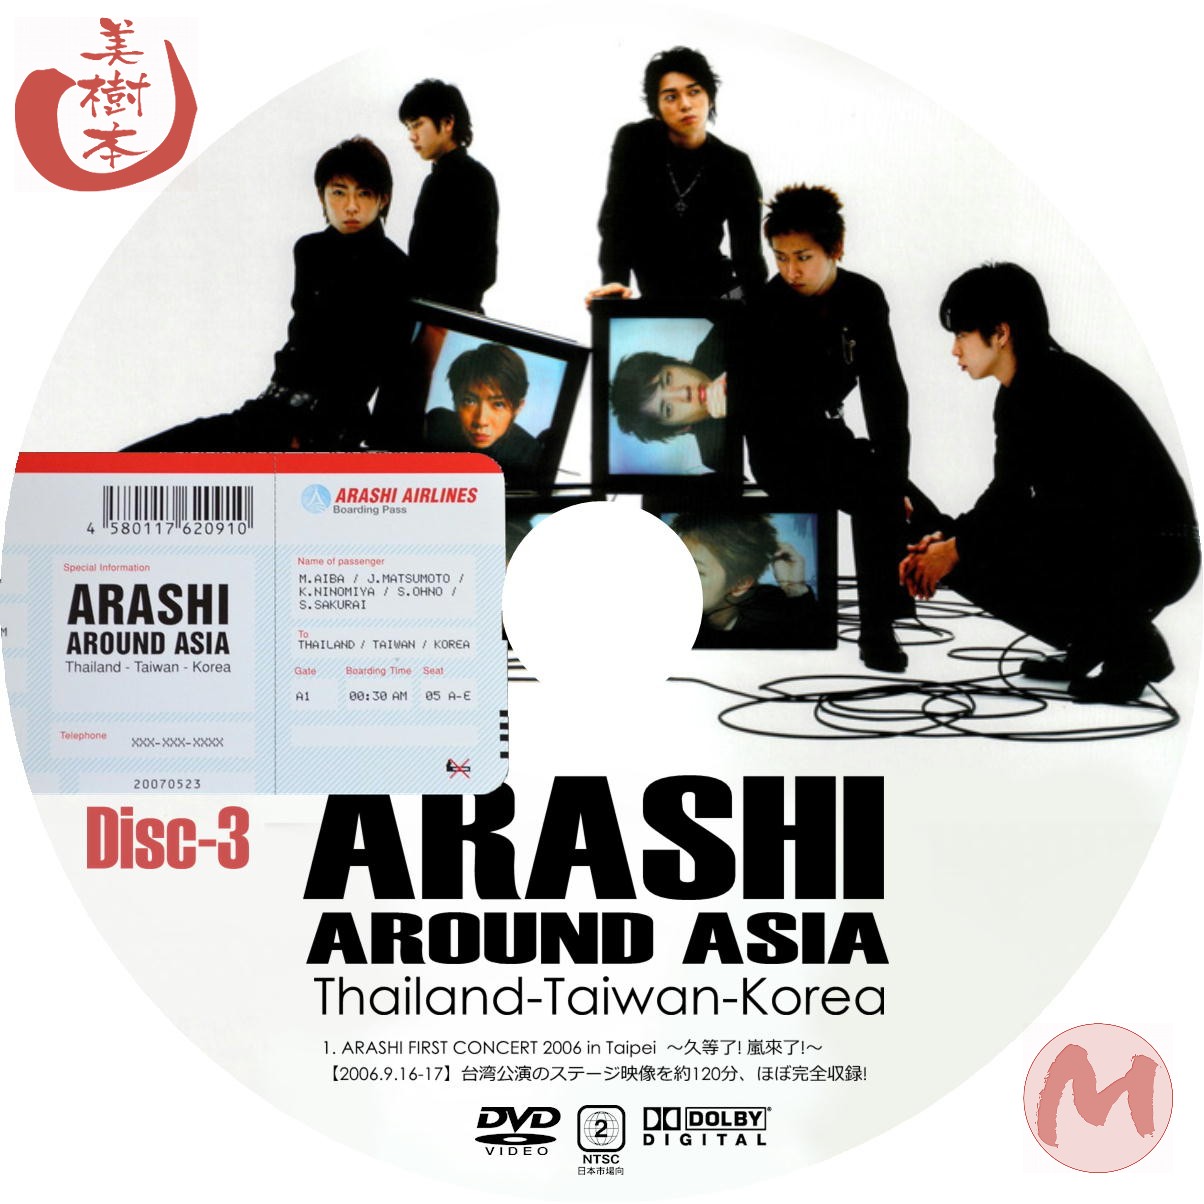 最も完璧な 嵐 ARASHI DVD 19枚セット AROUND ASIA 5×20 ミュージック 